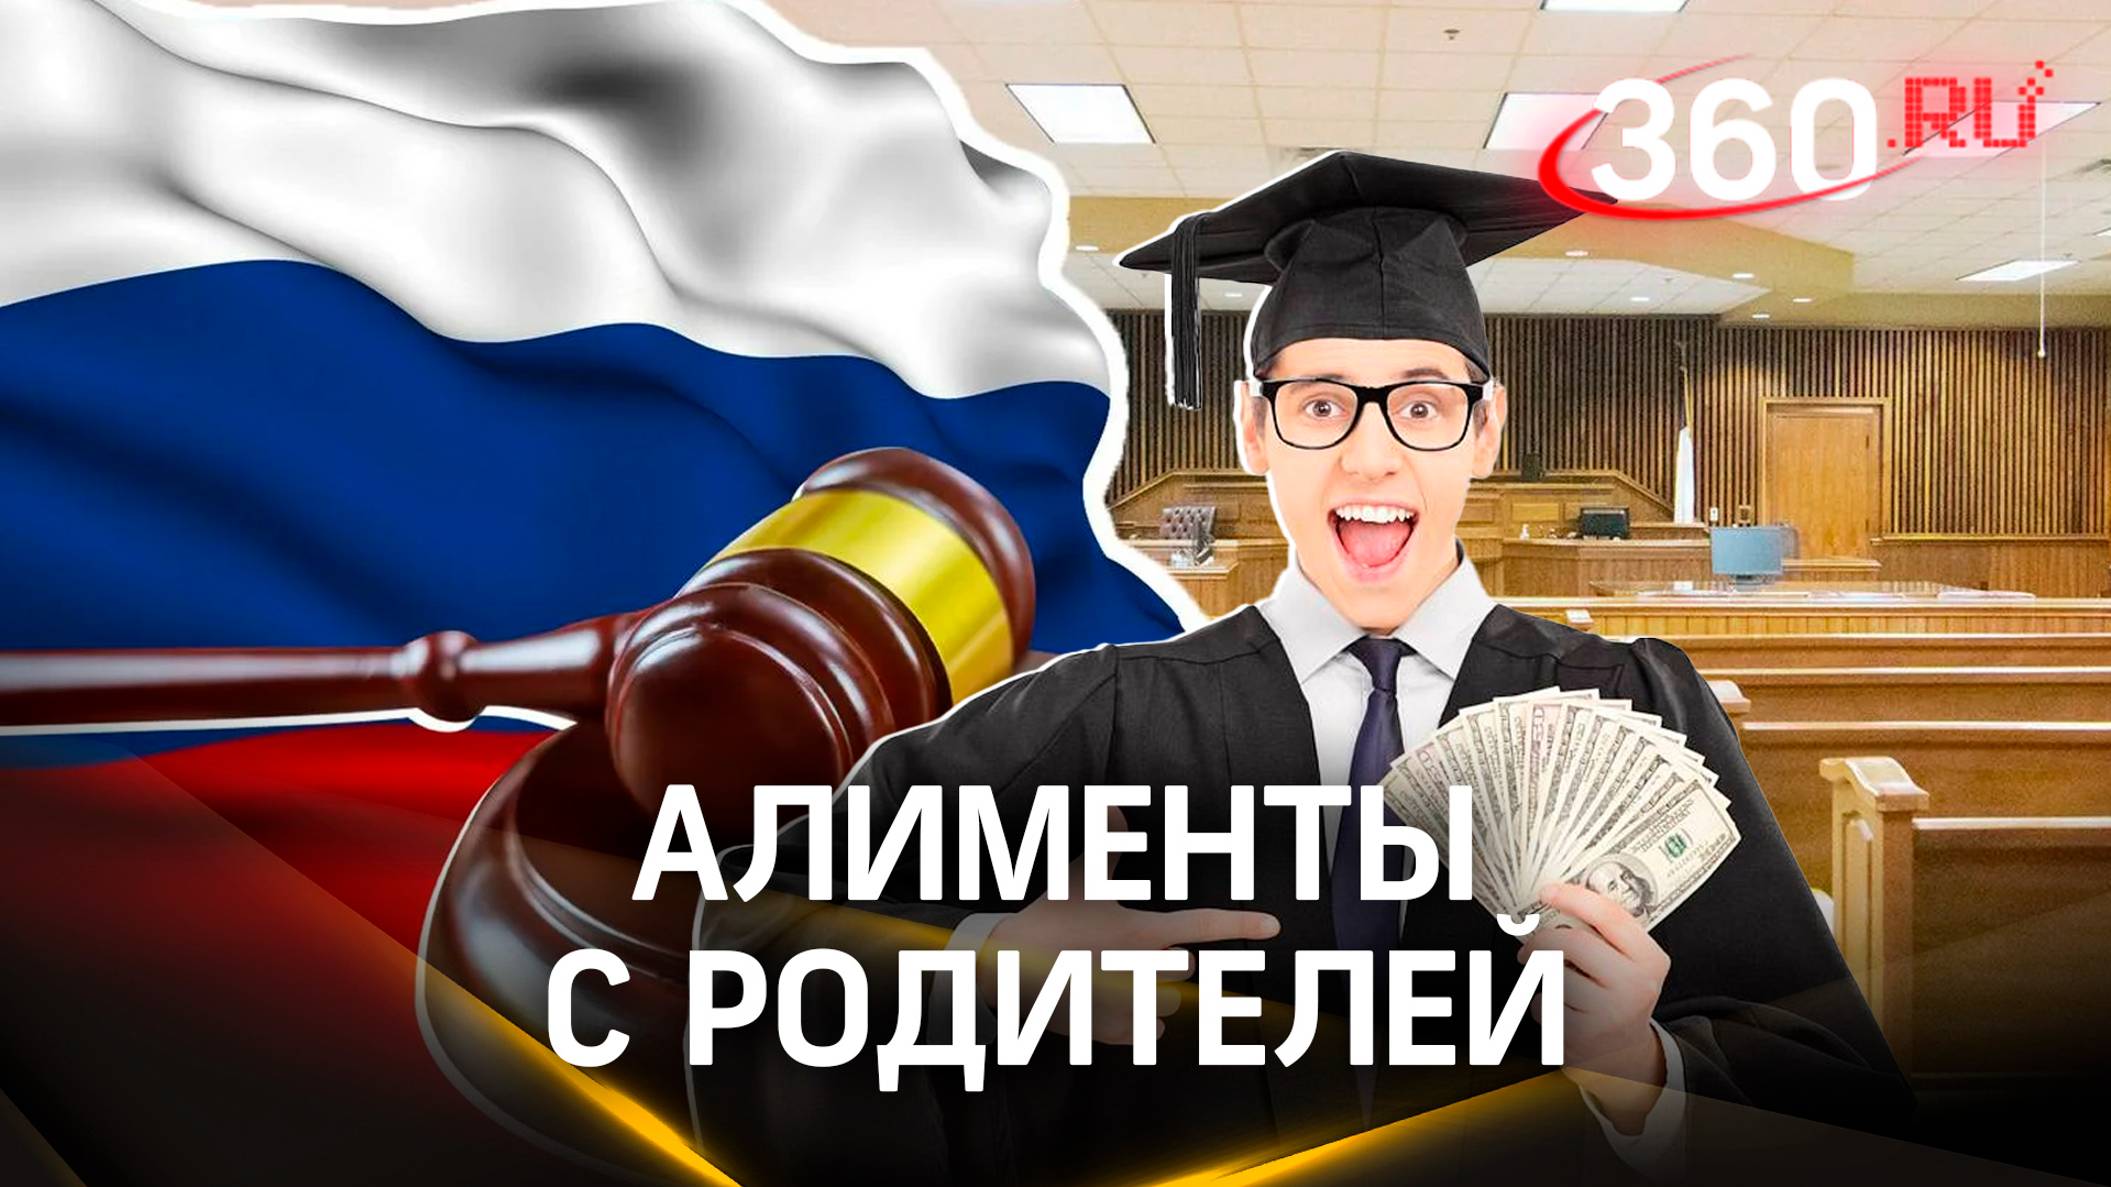 «Отдай мои деньги»: студенты смогут требовать алименты с родителей в суде - Госдума